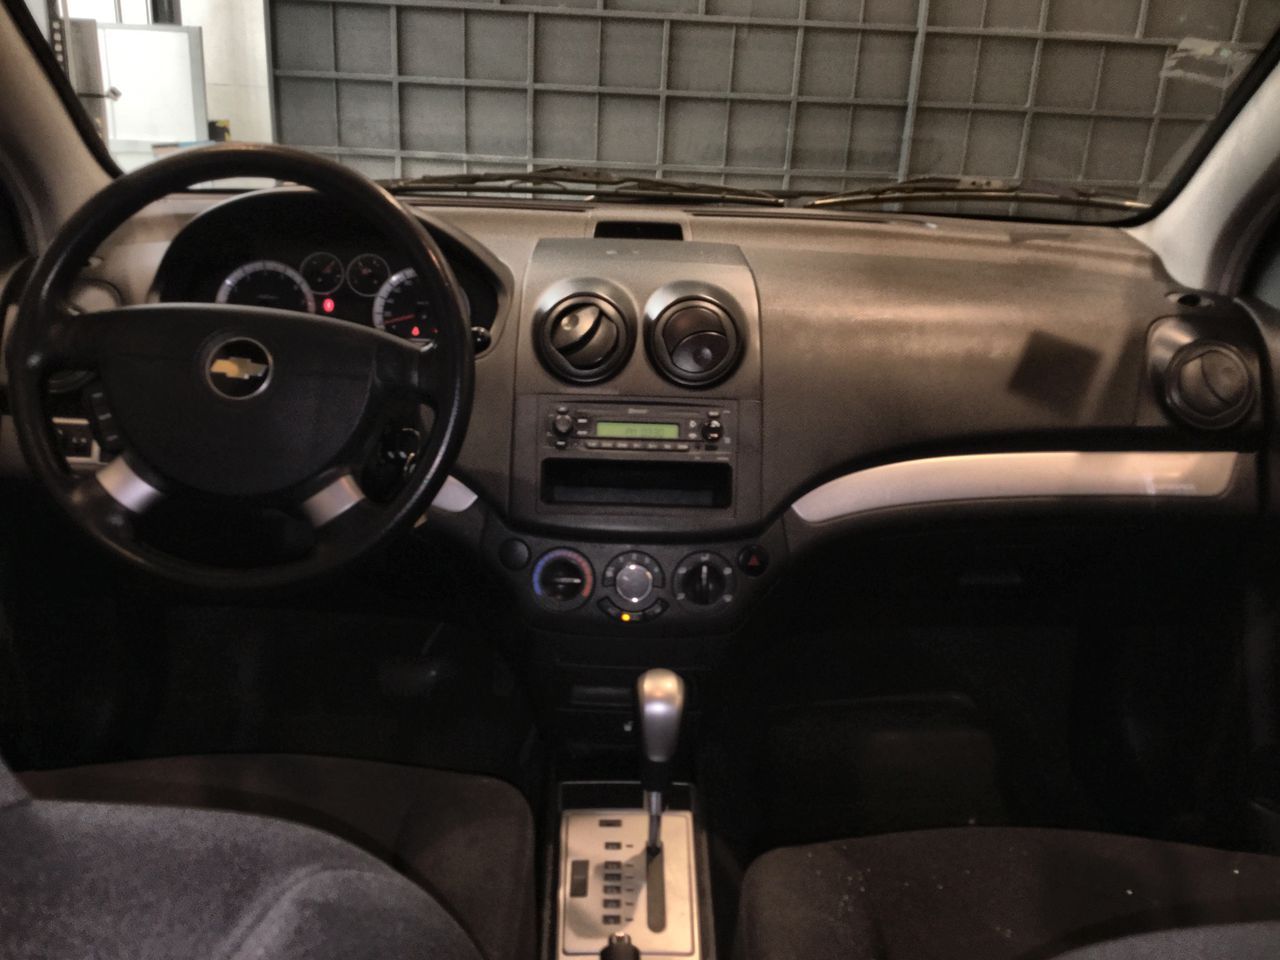 Chevrolet Aveo 2016